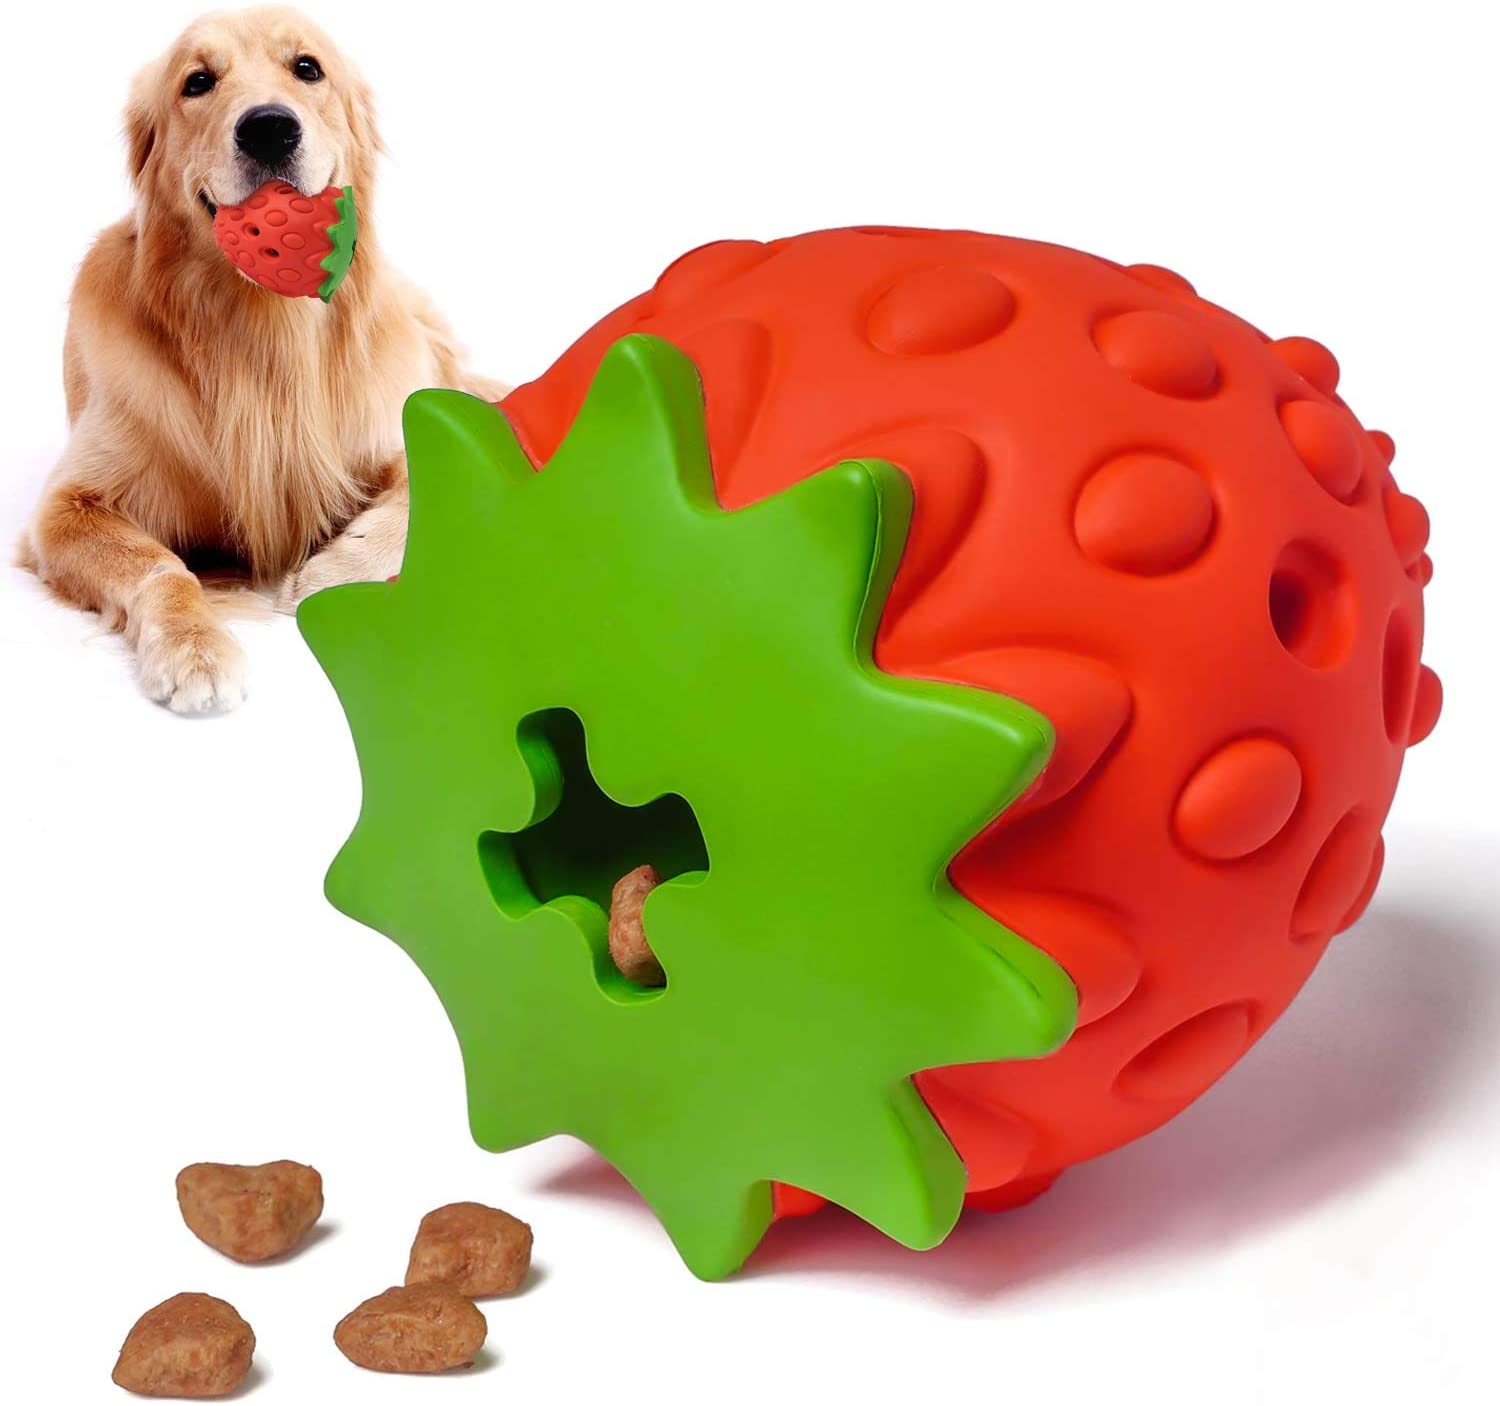 犬おもちゃ 犬噛むおもちゃ 犬用 柔らかい イチゴ 玩具ボール 最大42%OFFクーポン ラバー製 知育玩具 歯清潔 餌入れ 運動不足やストレス解消 おやつボール 安全 丈夫 新作送料無料 大型犬 中型犬